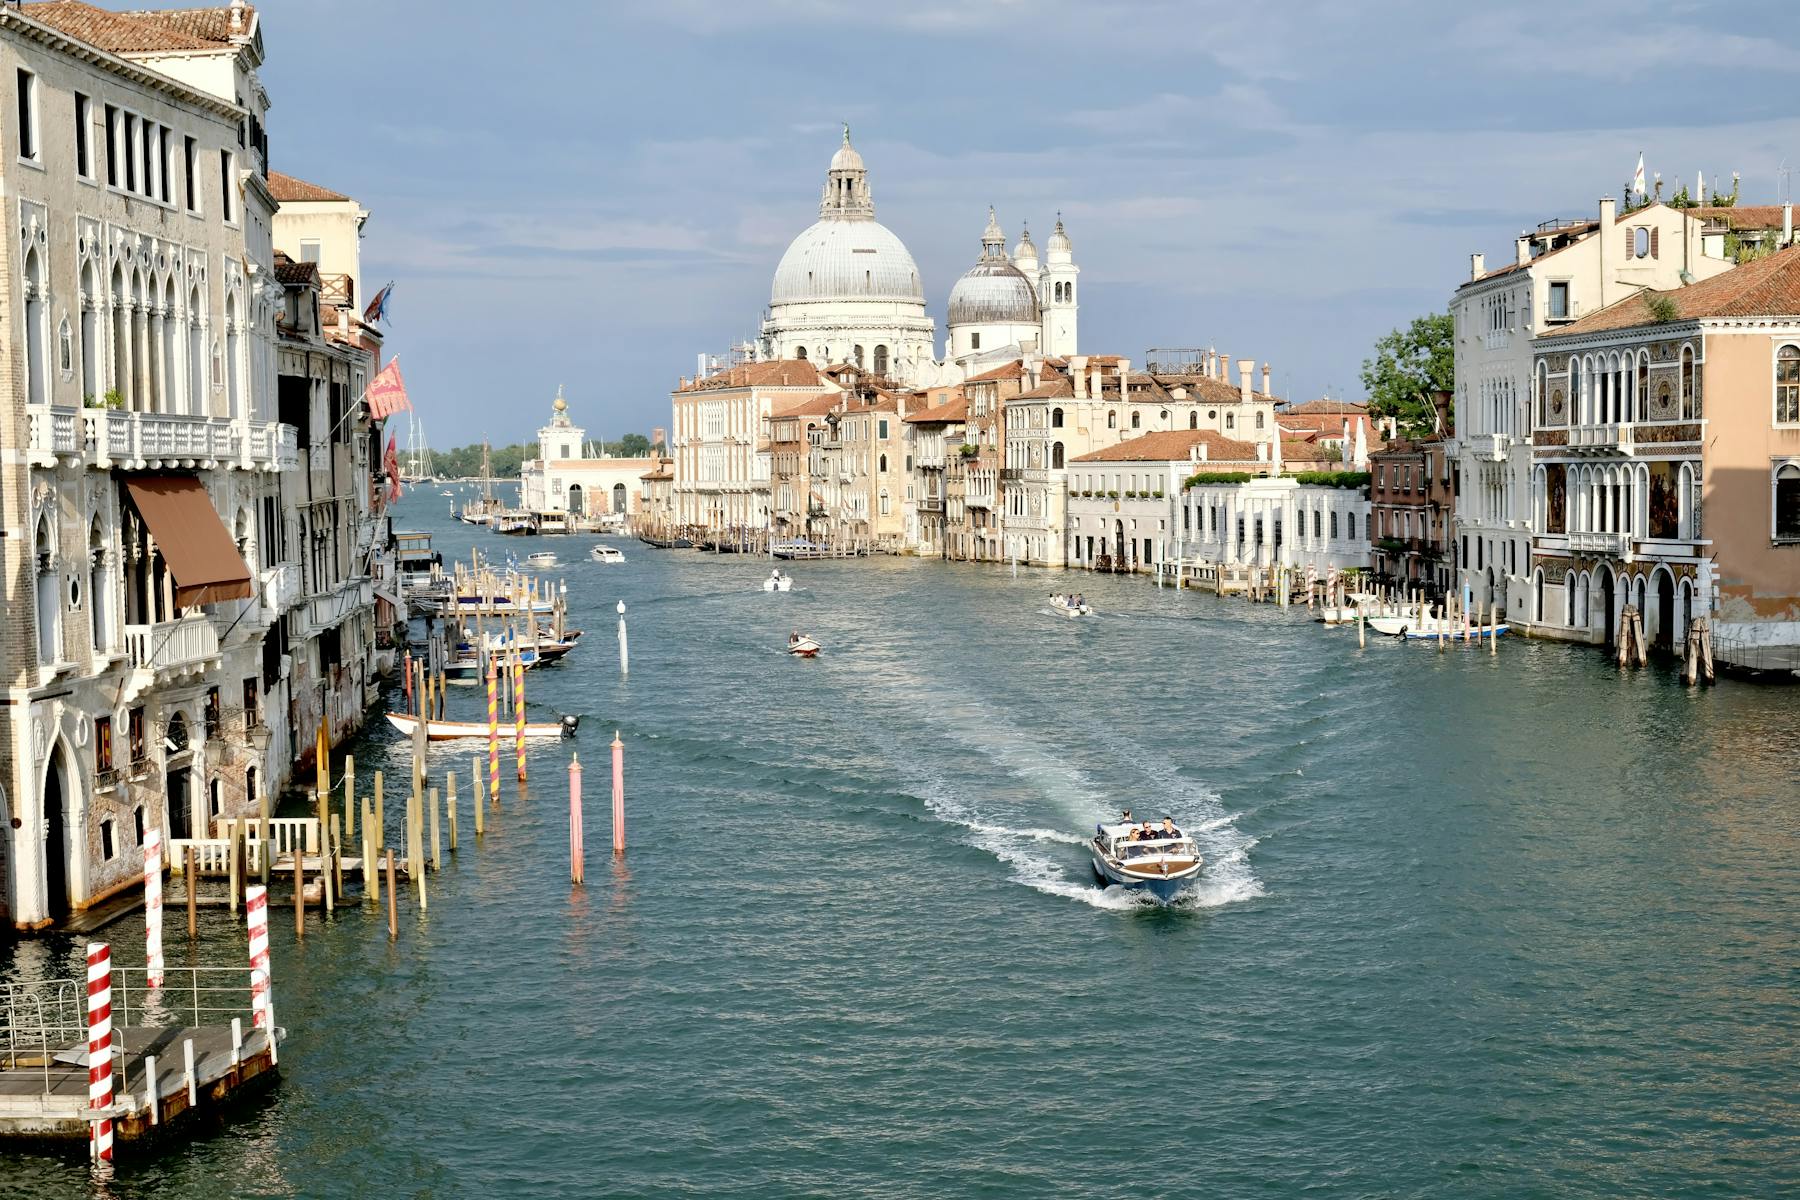 Boats passing below Ponte dell'Accademia overlooking the Basilica di Santa Maria della Salute in Venice, Italy